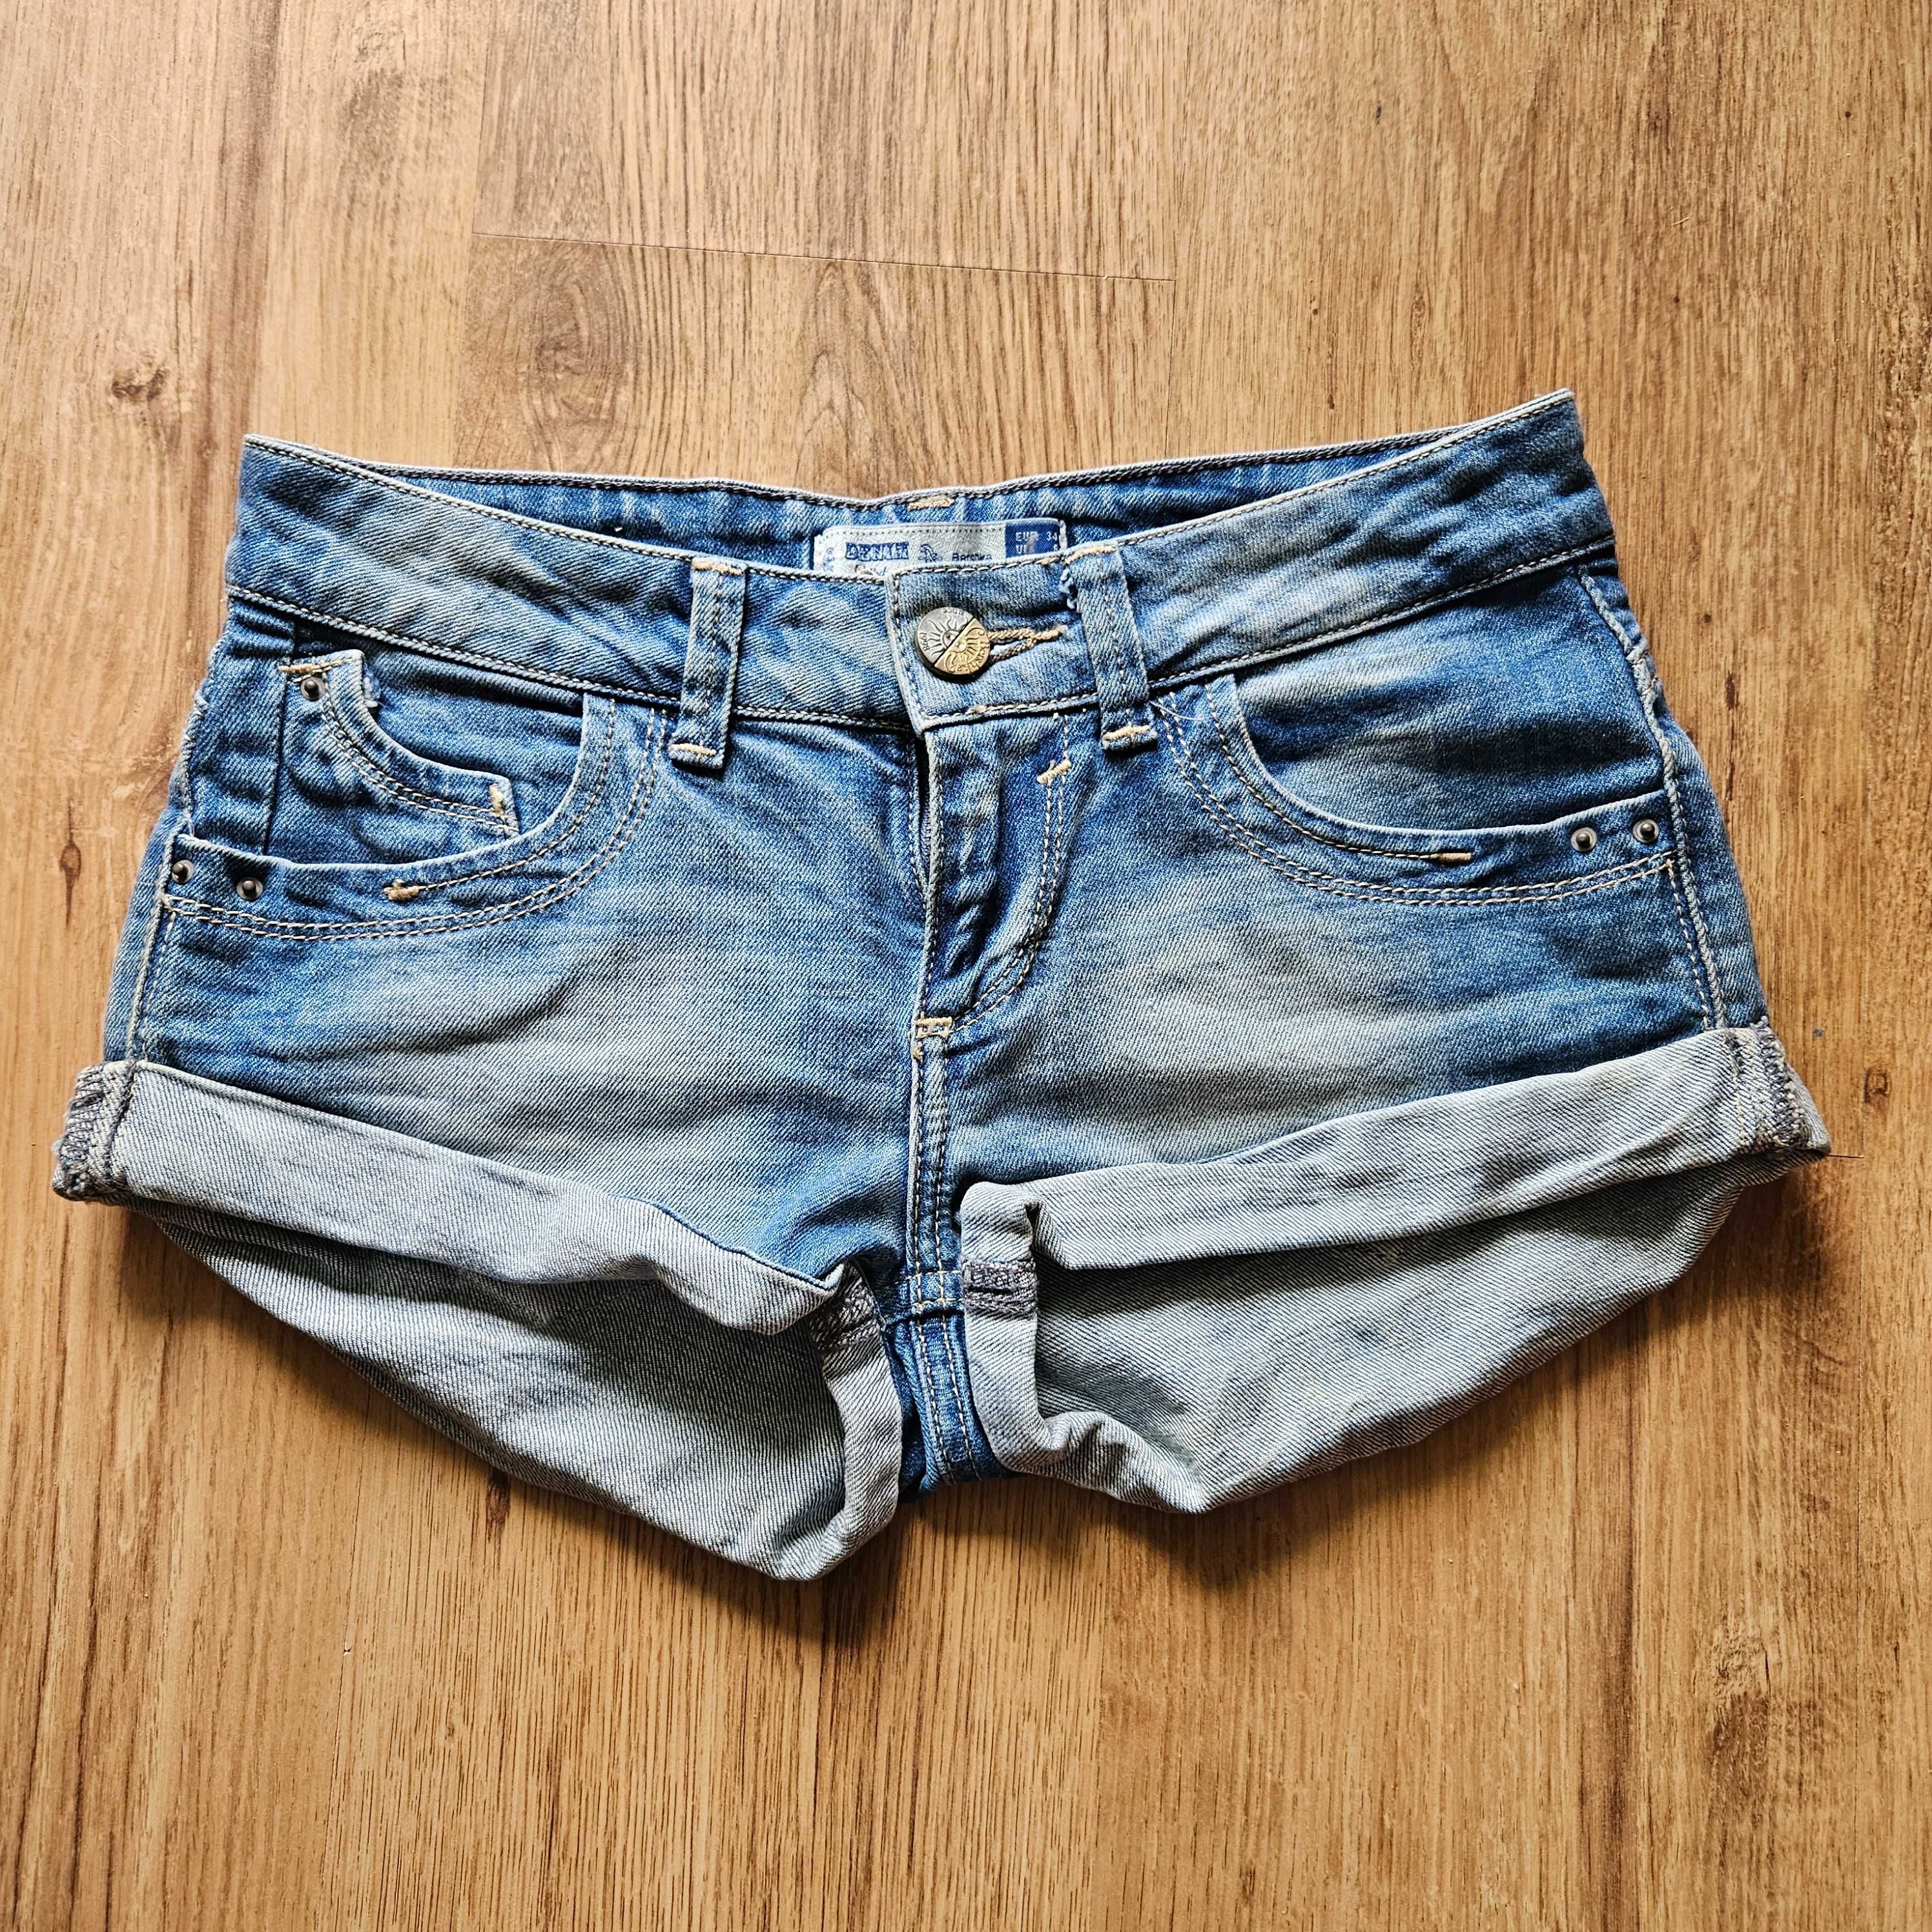 Spodenki, szorty jeansowe damskie niebieskie 34 Bershka NOWE